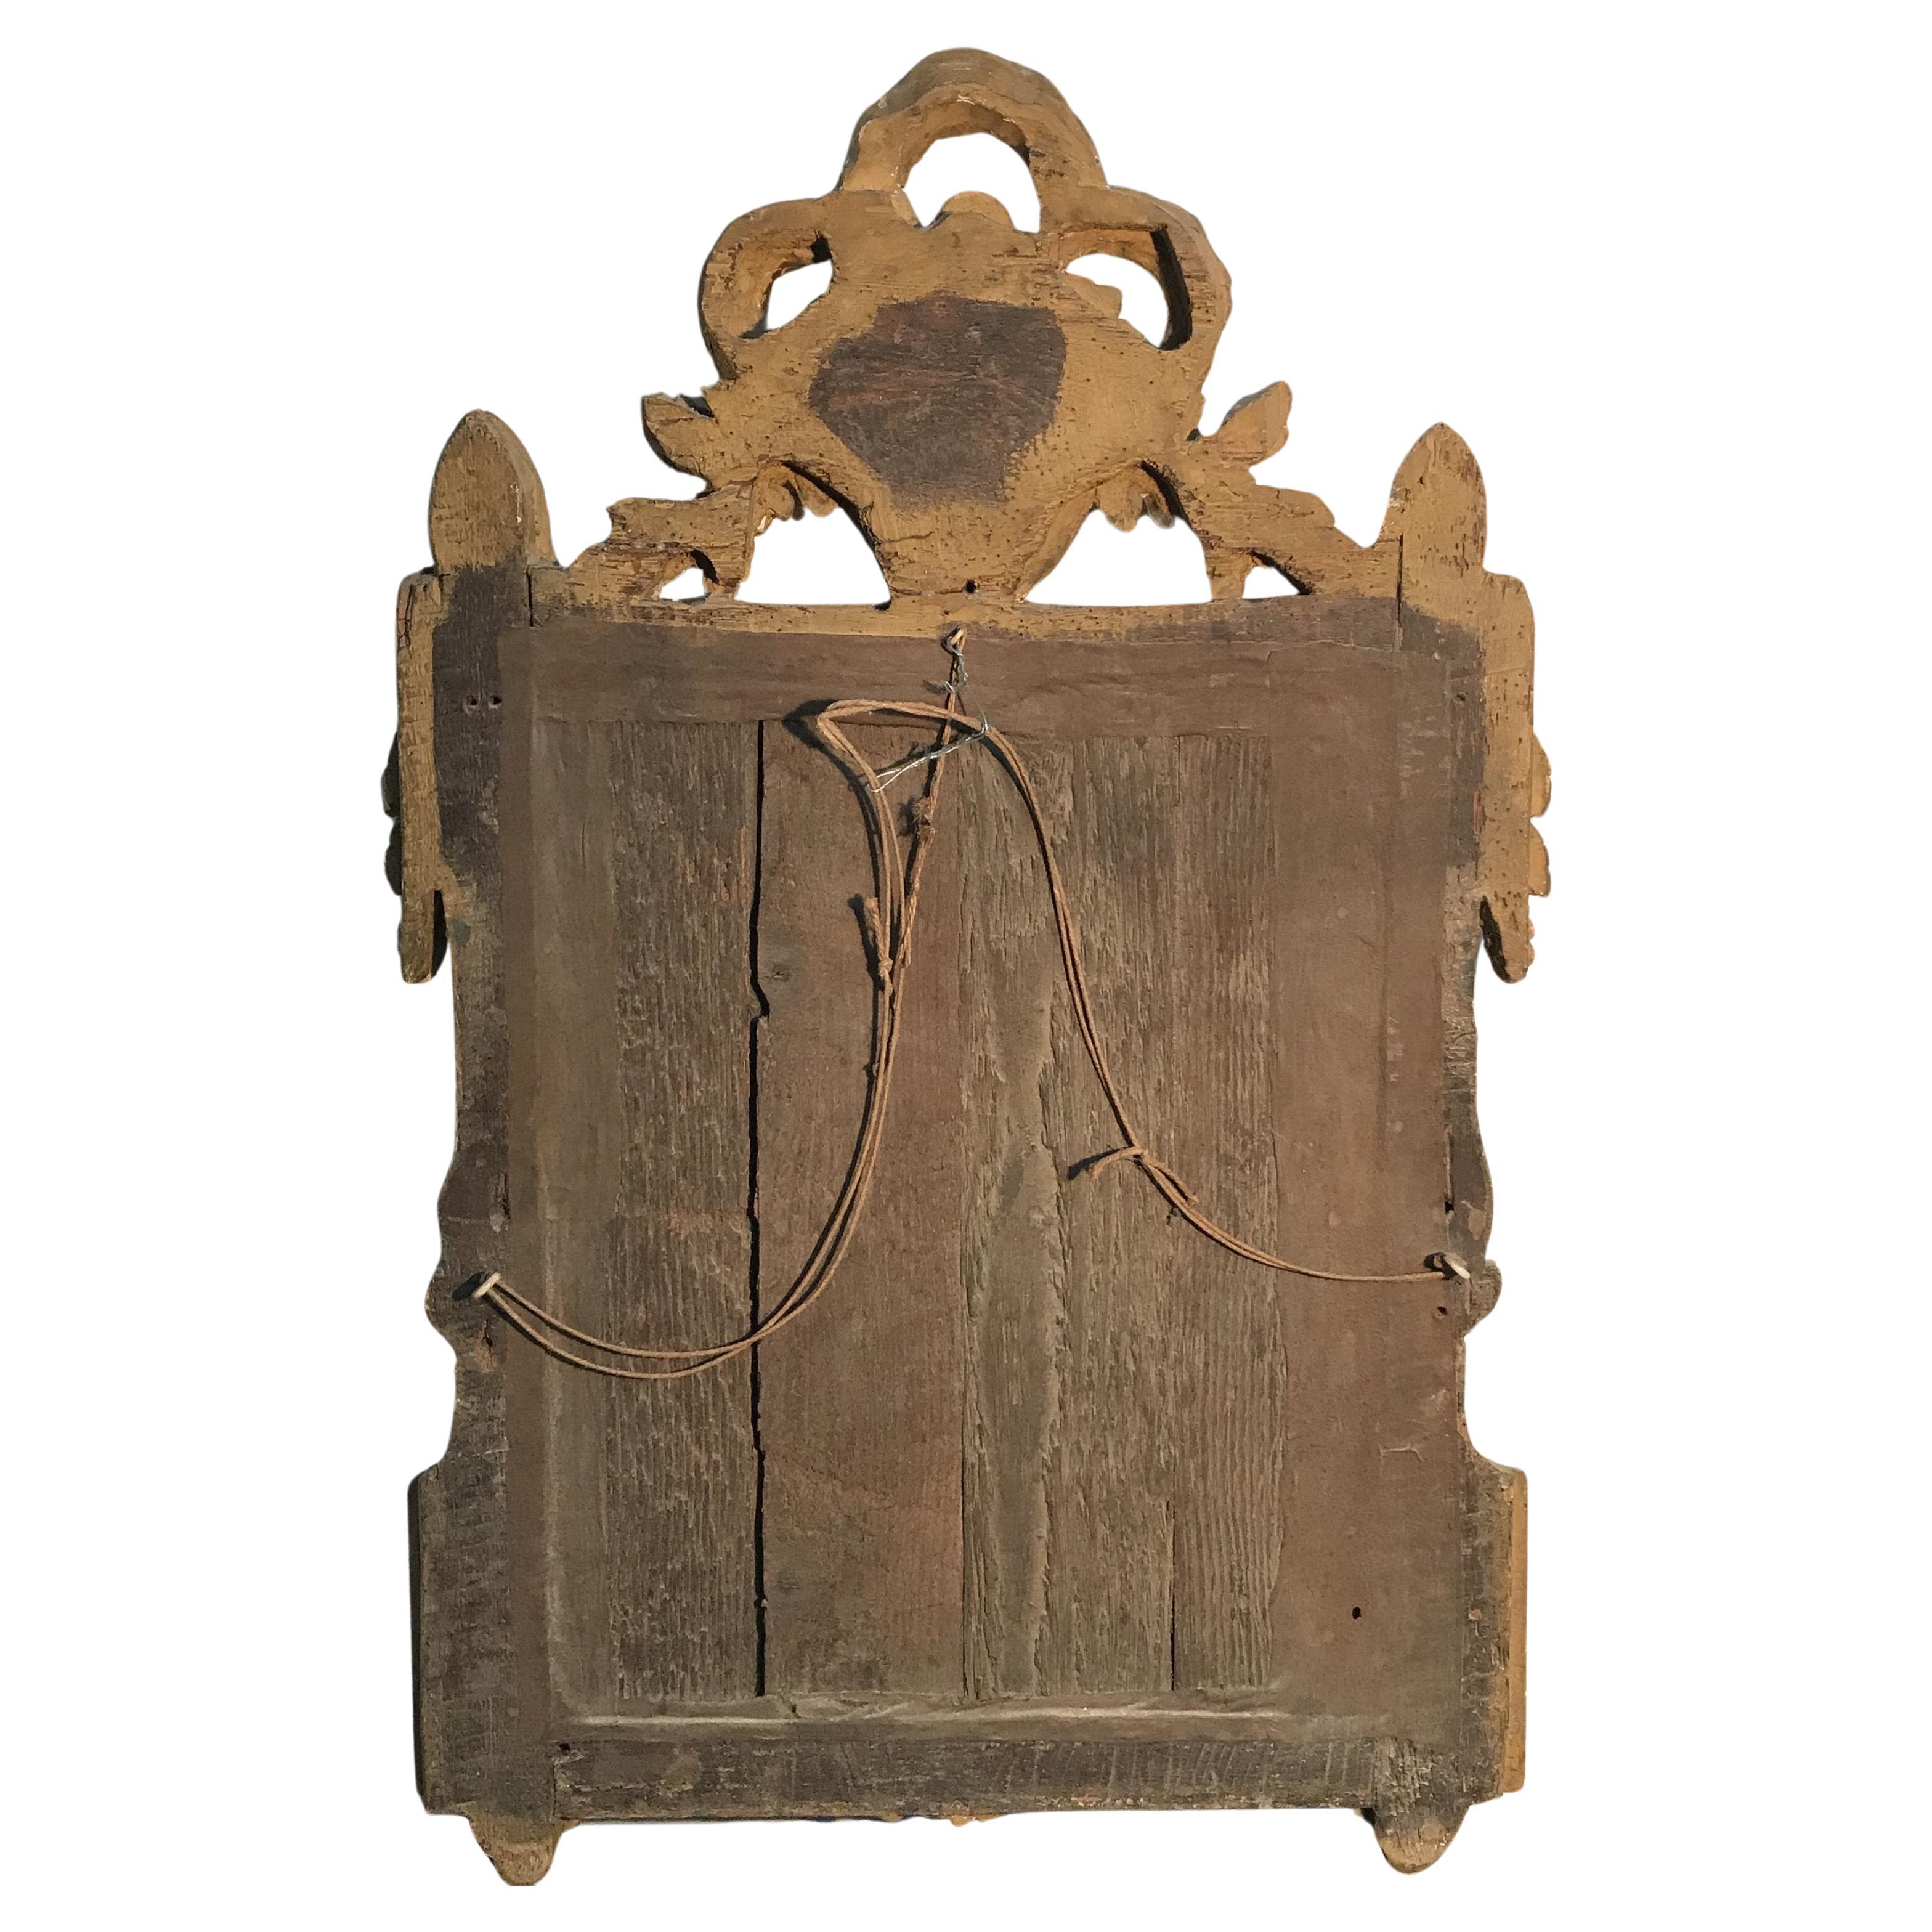 Magnifique miroir doré et orné du début du 18e siècle en France.
#4758